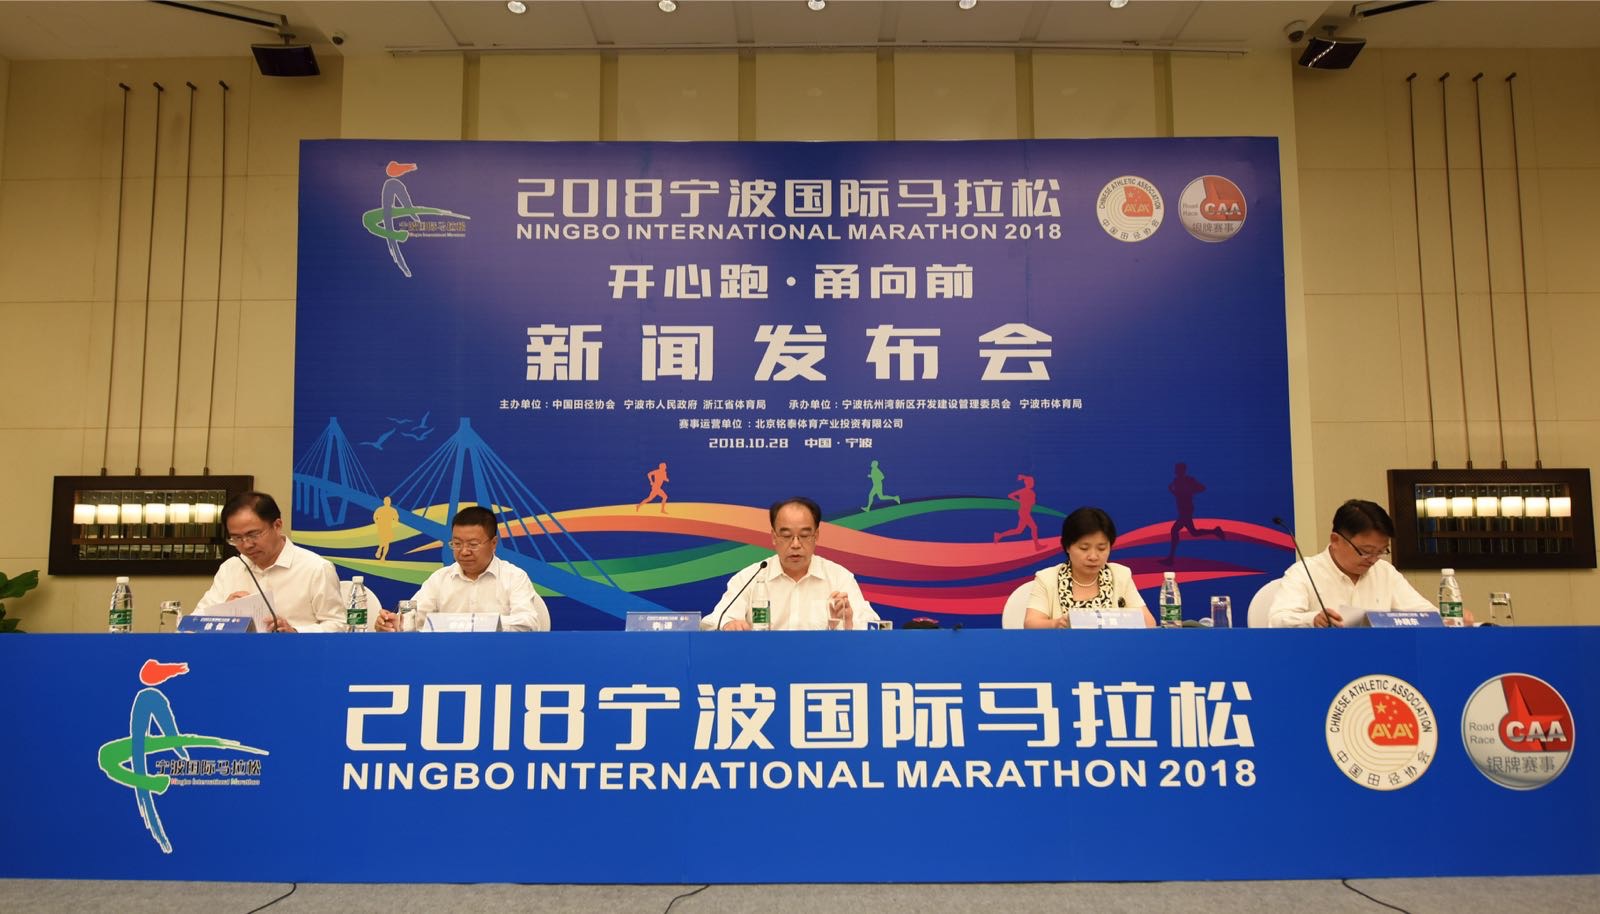  2018宁波国际马拉松:10月28日宁波杭州湾新区开跑 8月30日9时开始报名 